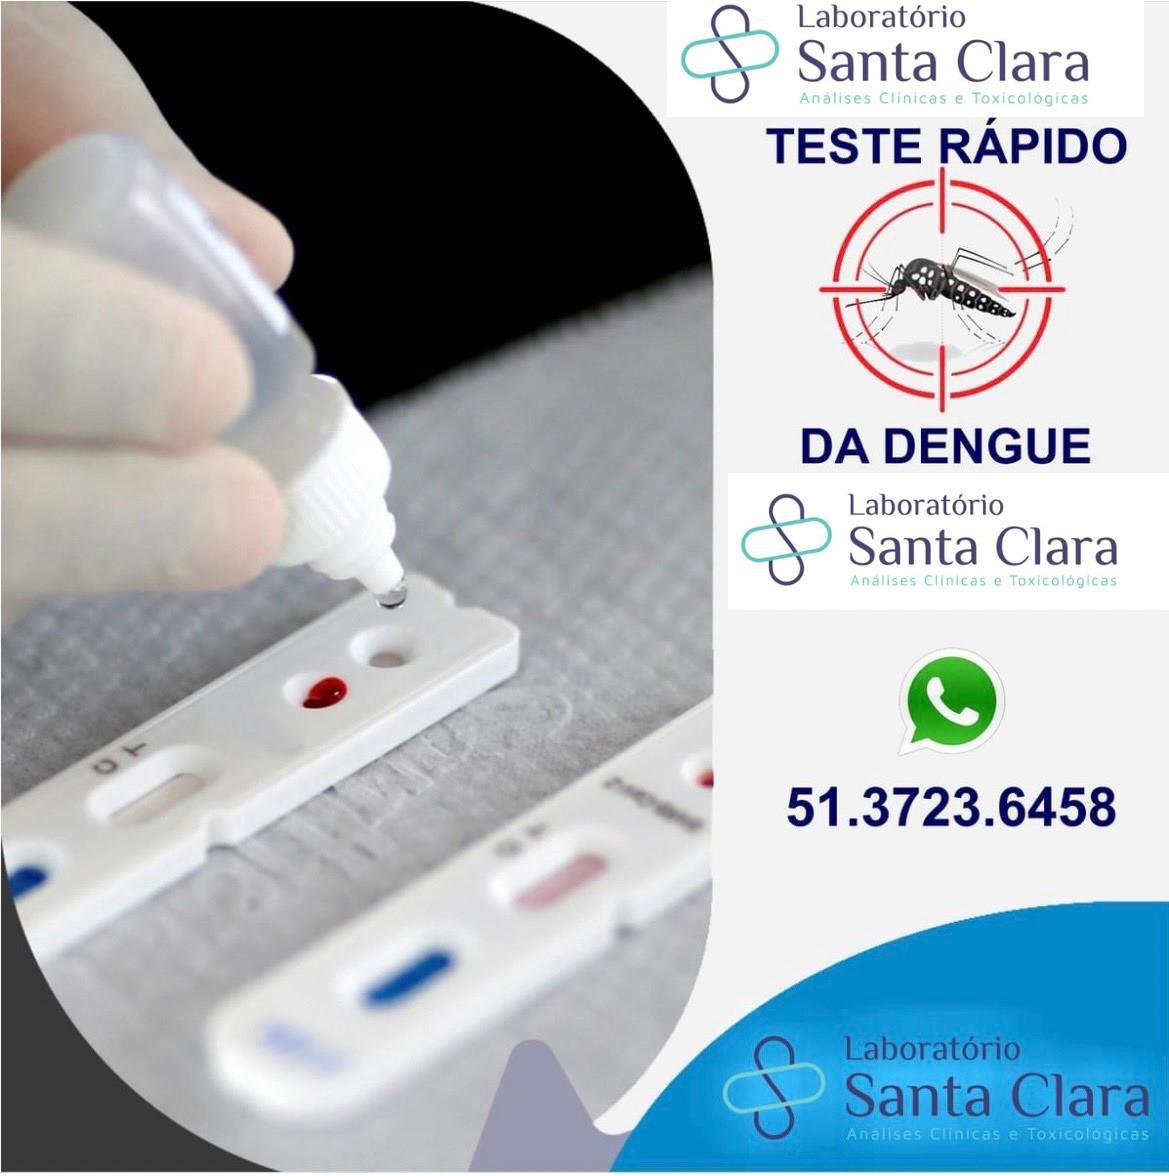 Teste rápido para detecção de Dengue por R$ 60.00